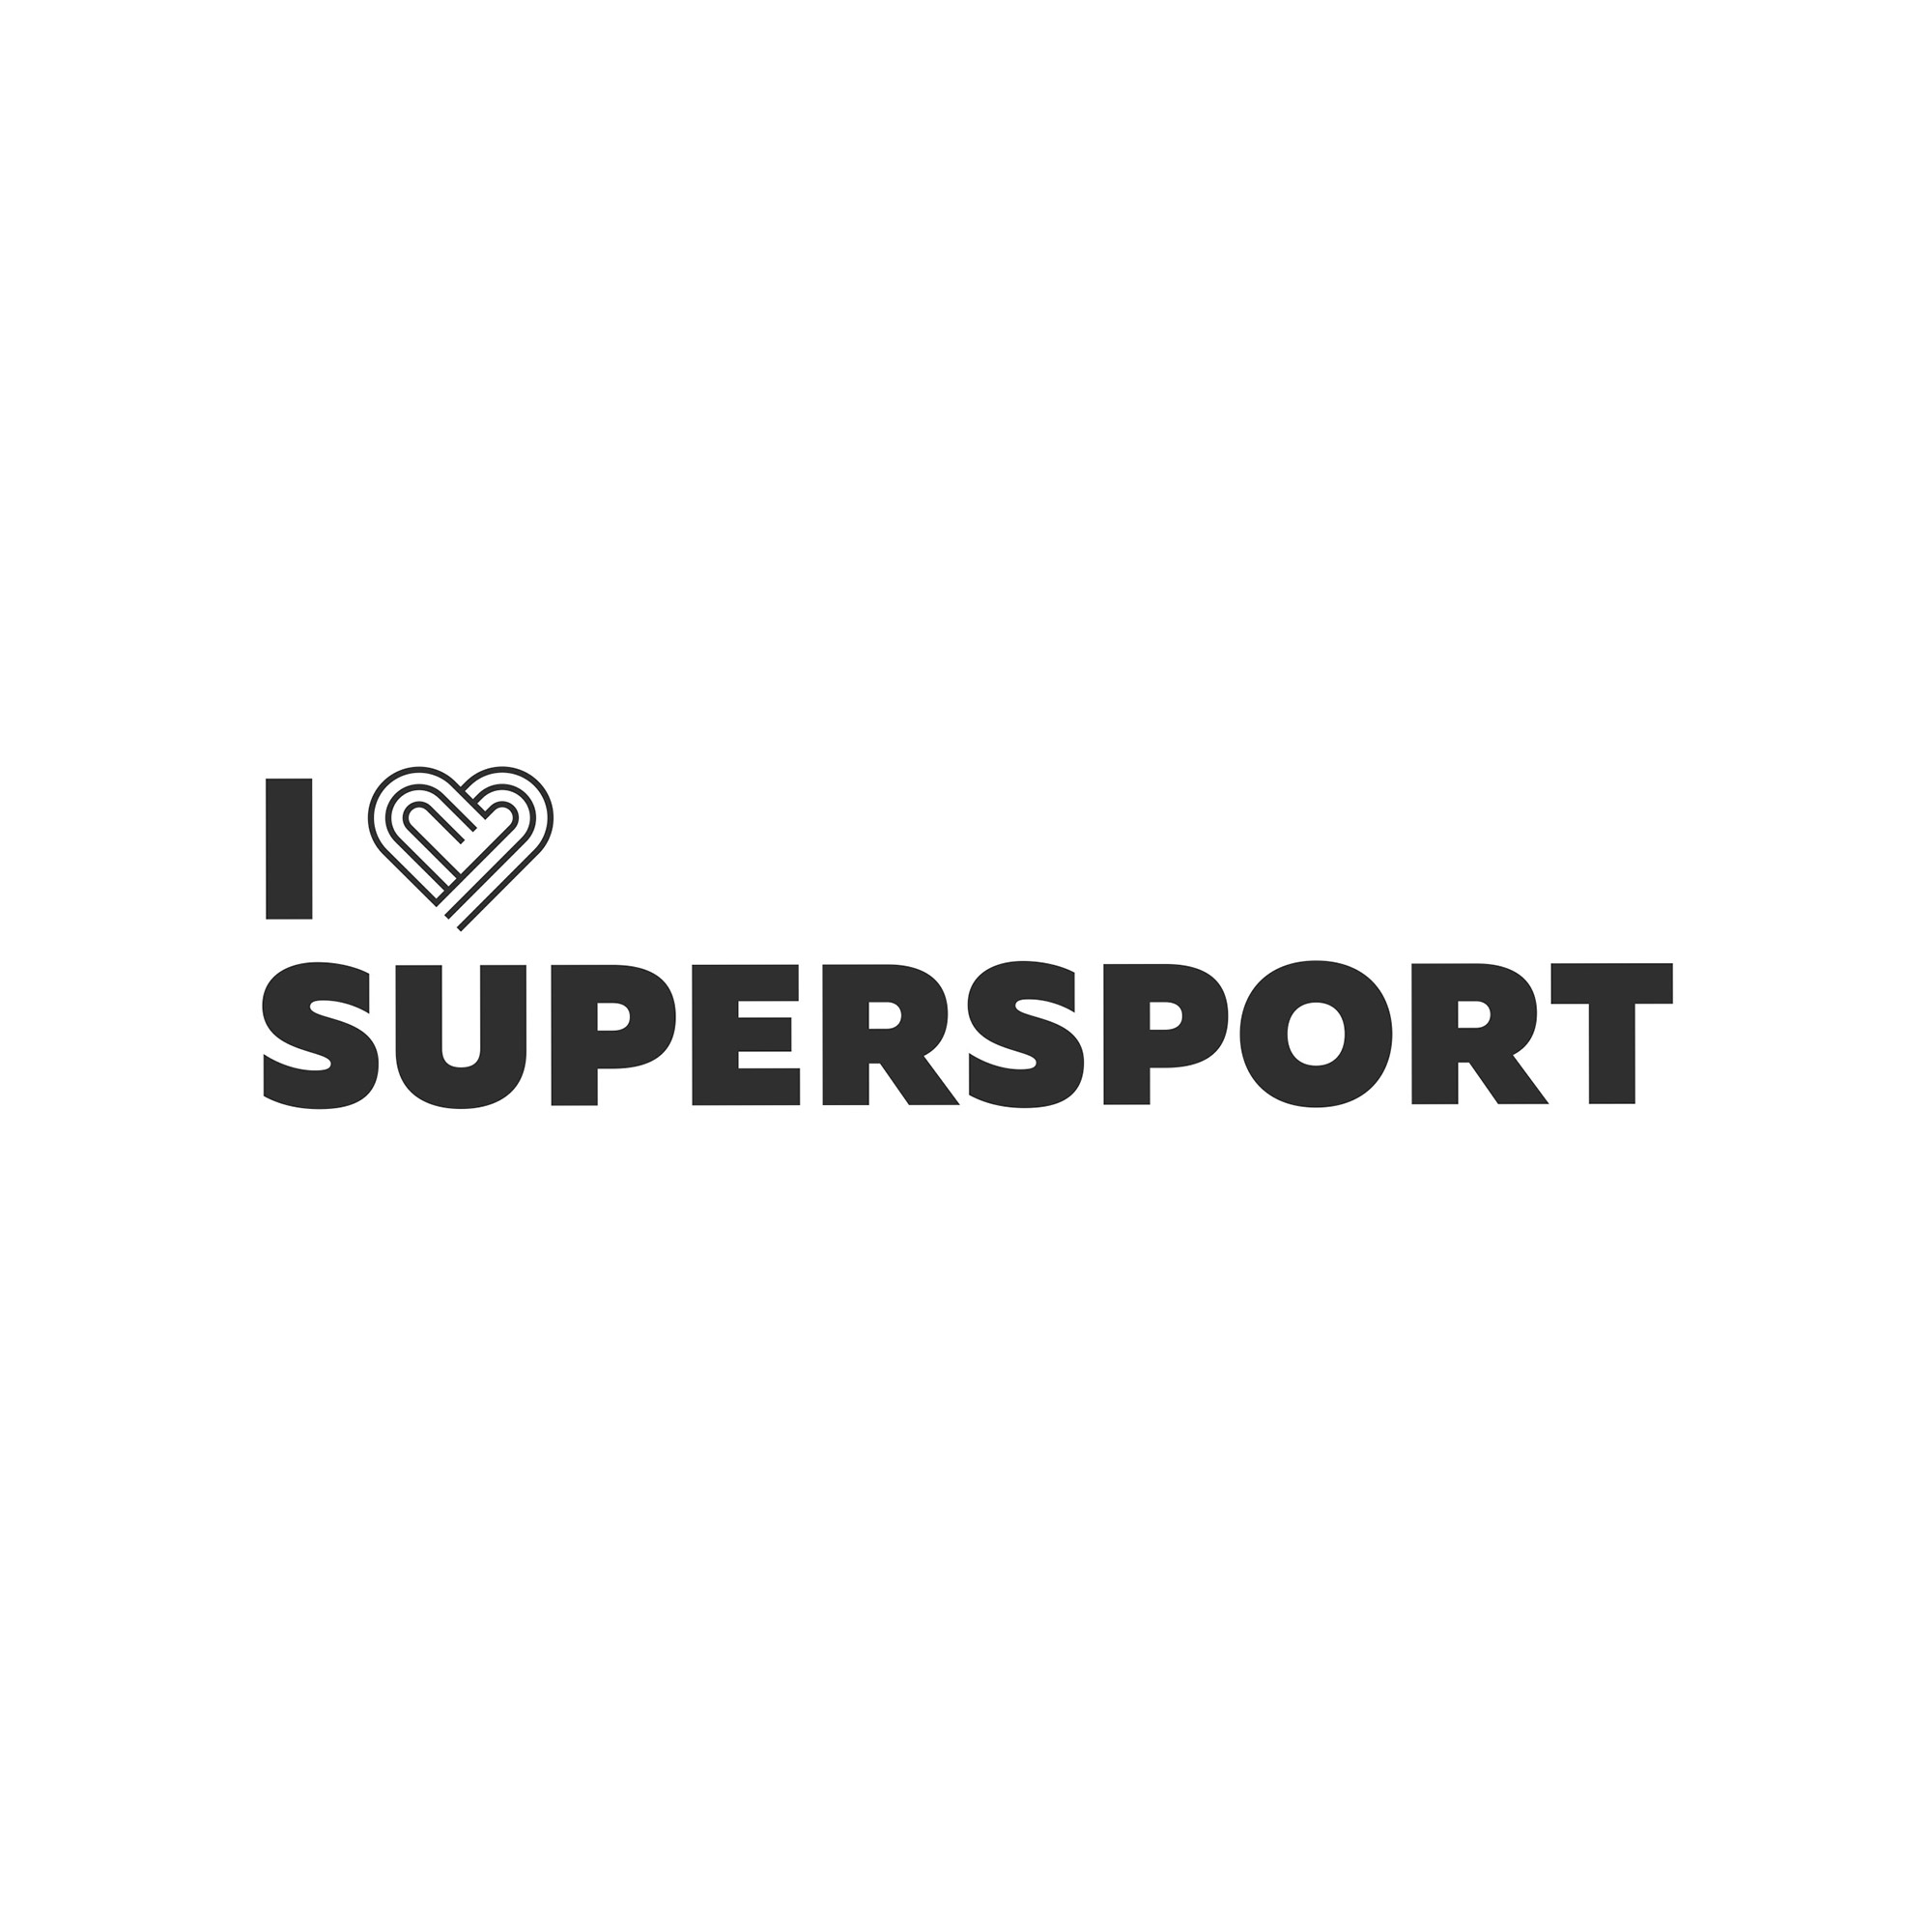 I Love Supersport